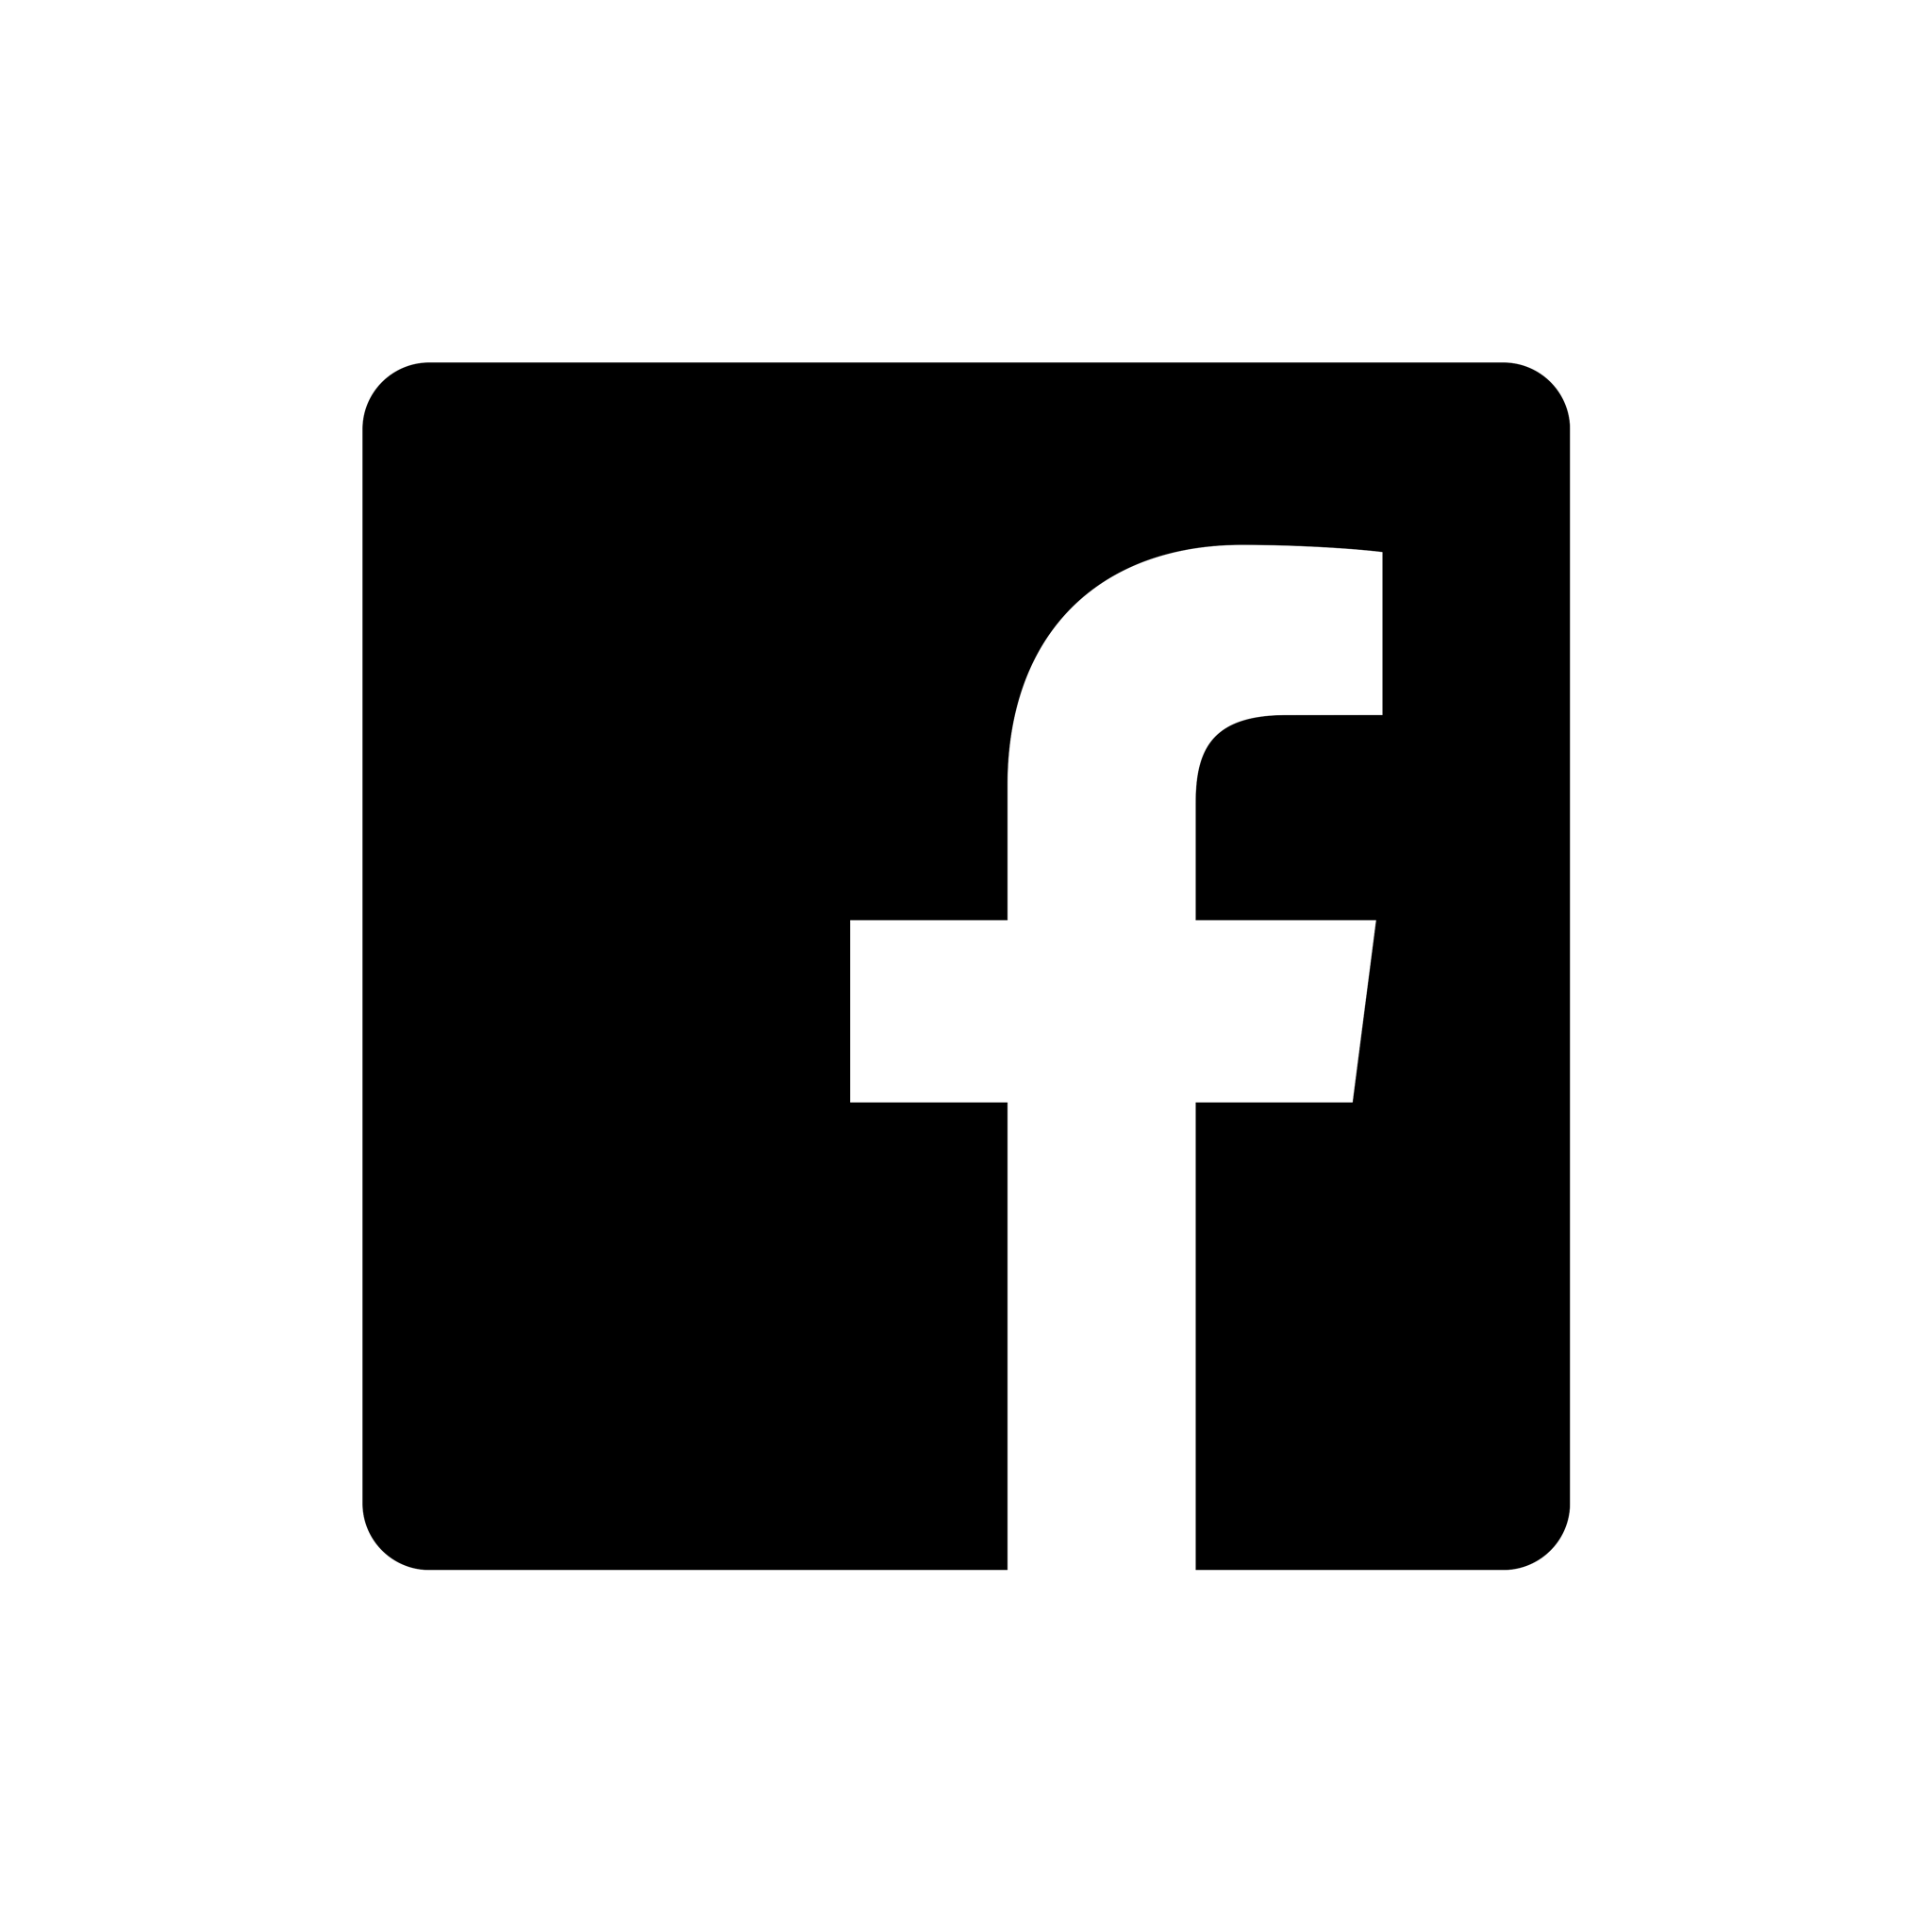 Imagens transparentes preto e branco do logotipo do Facebook